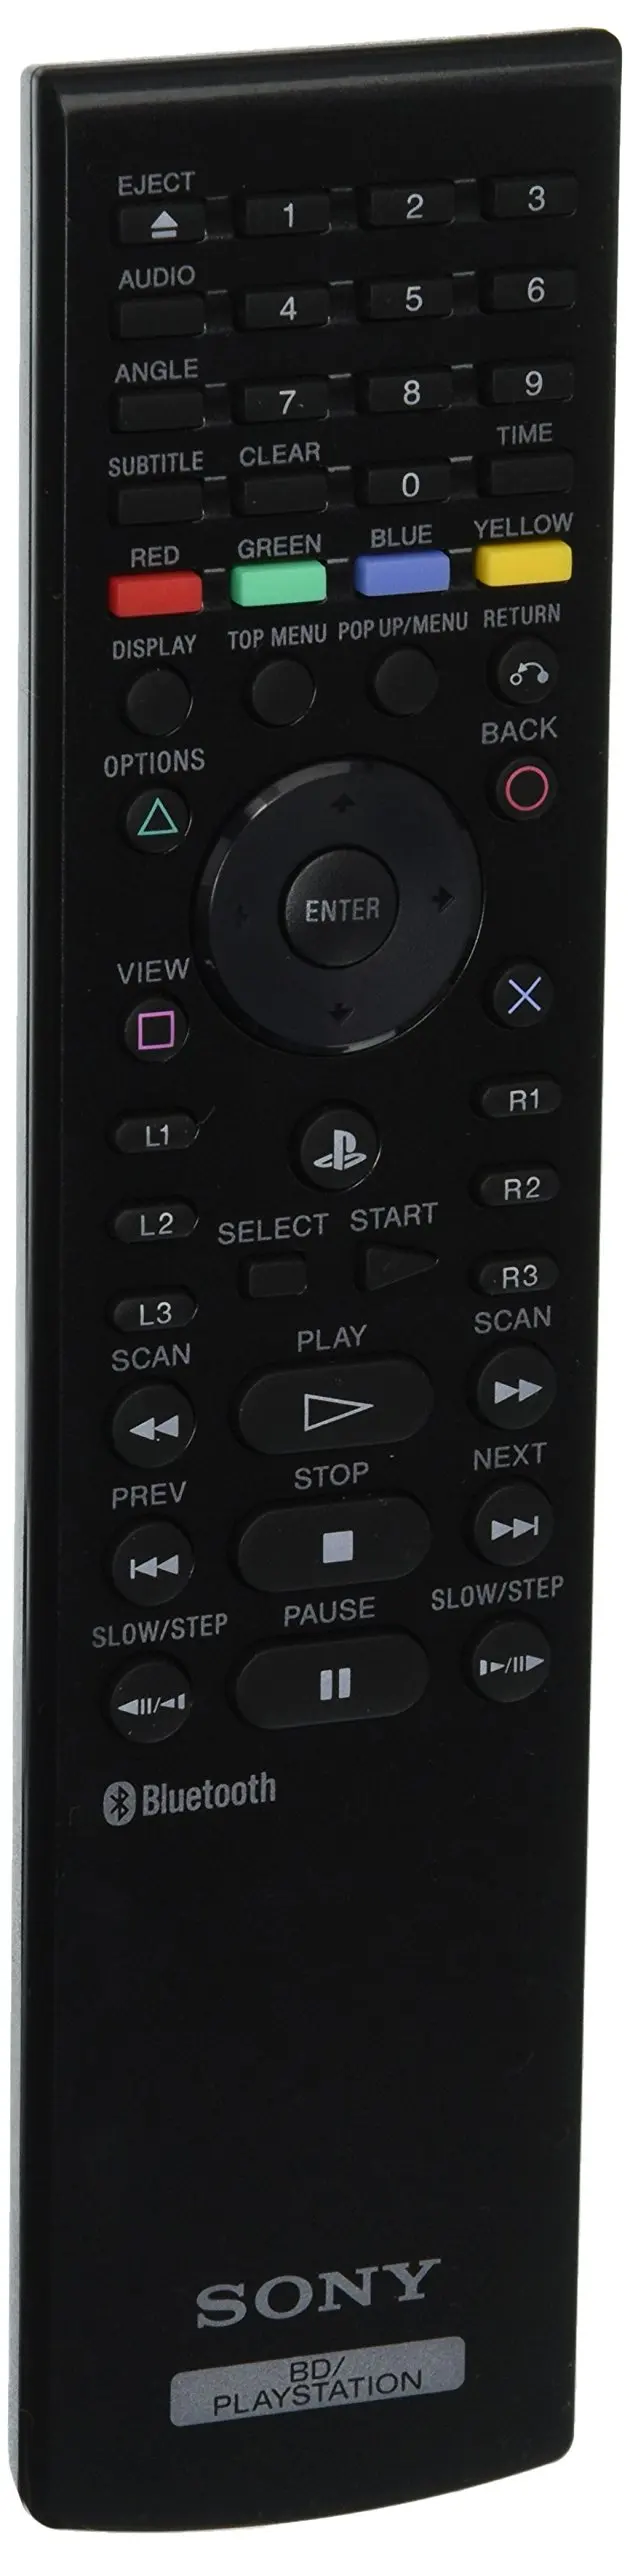 playstation 3 blu ray remote